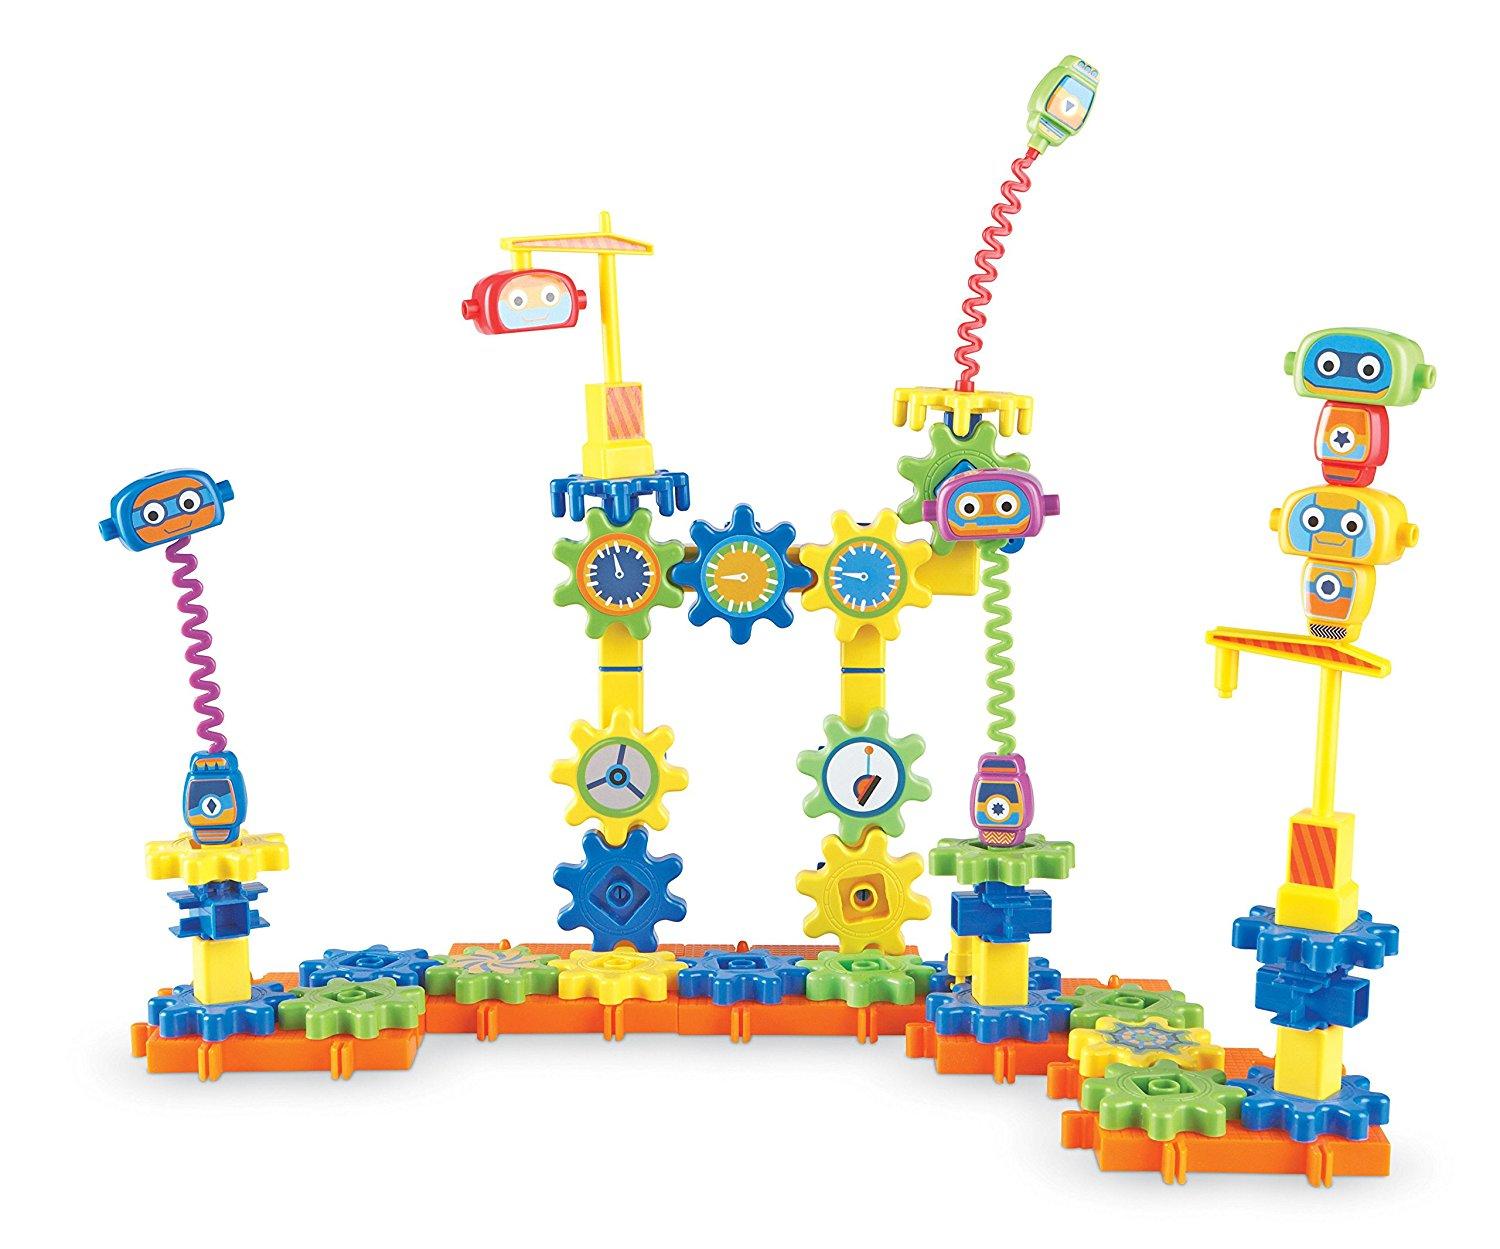 Set de constructie - Gears! Fabrica de robotei PlayLearn Toys